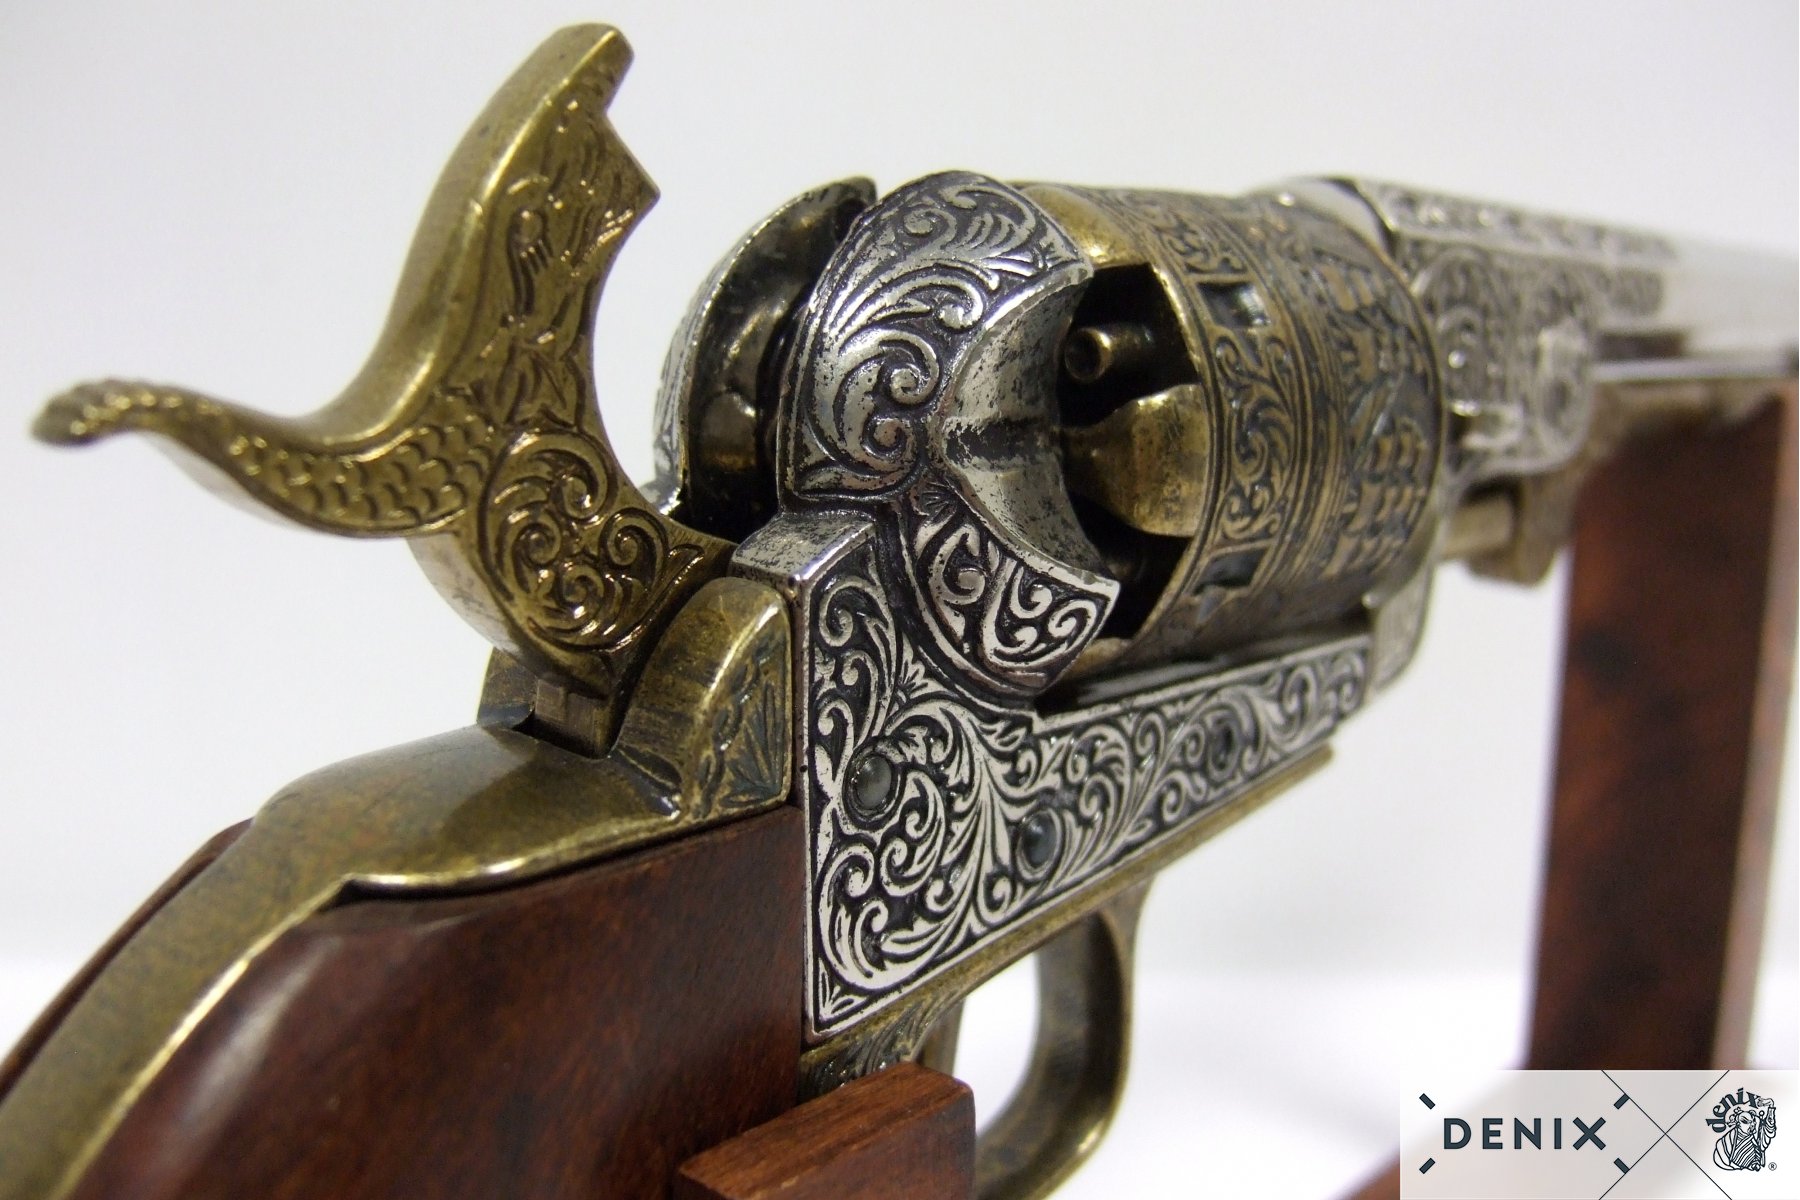 decorative colt navy 1861 replica civil war pistol sword rifle